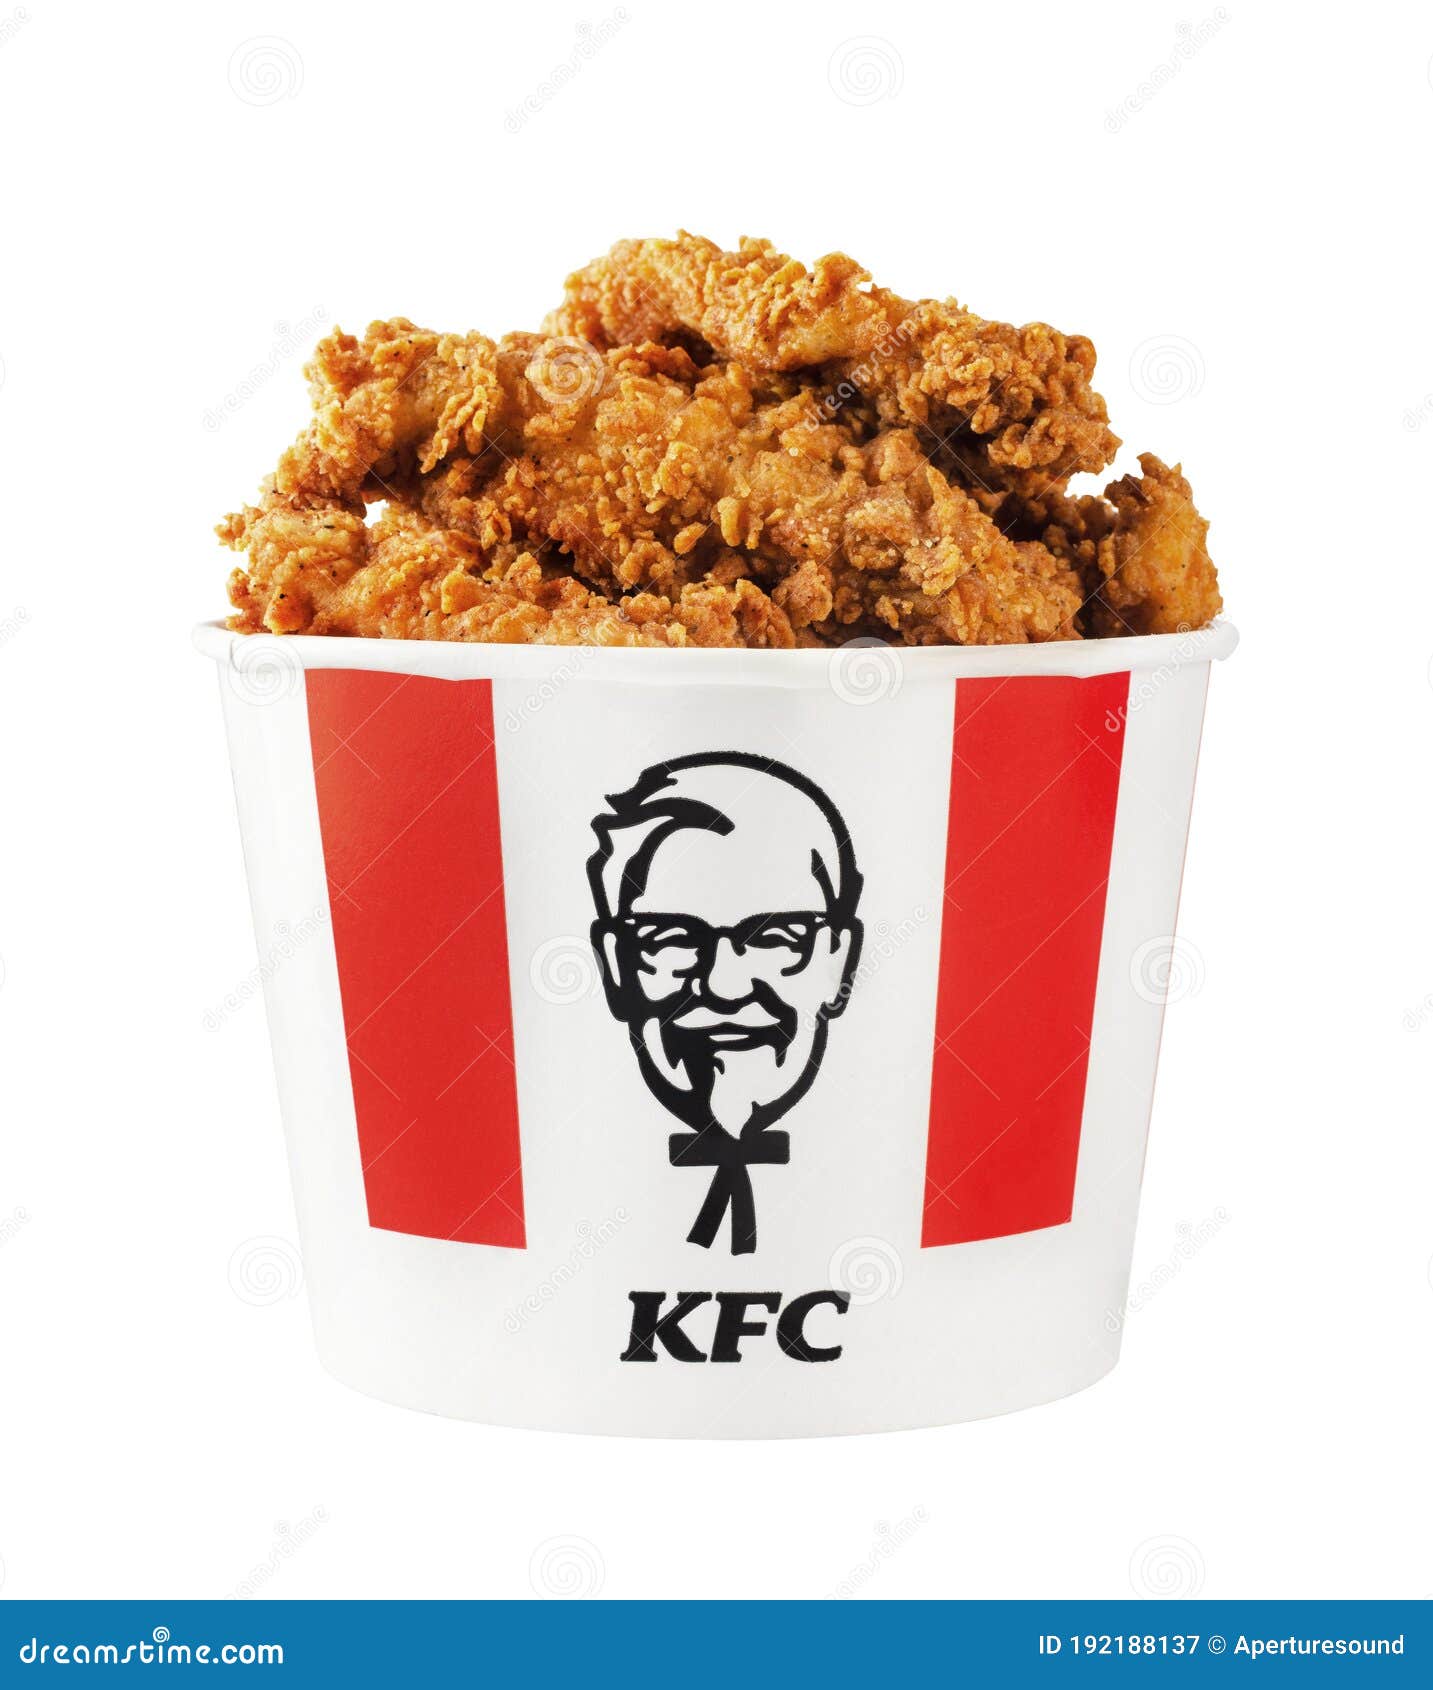 Nóng hổi, giòn tan và chứa đựng vị ngon đặc trưng của KFC - mọi thứ đều xuất sắc trên đĩa KFC Chicken Hot Wings. Một lần thử, bạn sẽ yêu KFC mãi mãi.